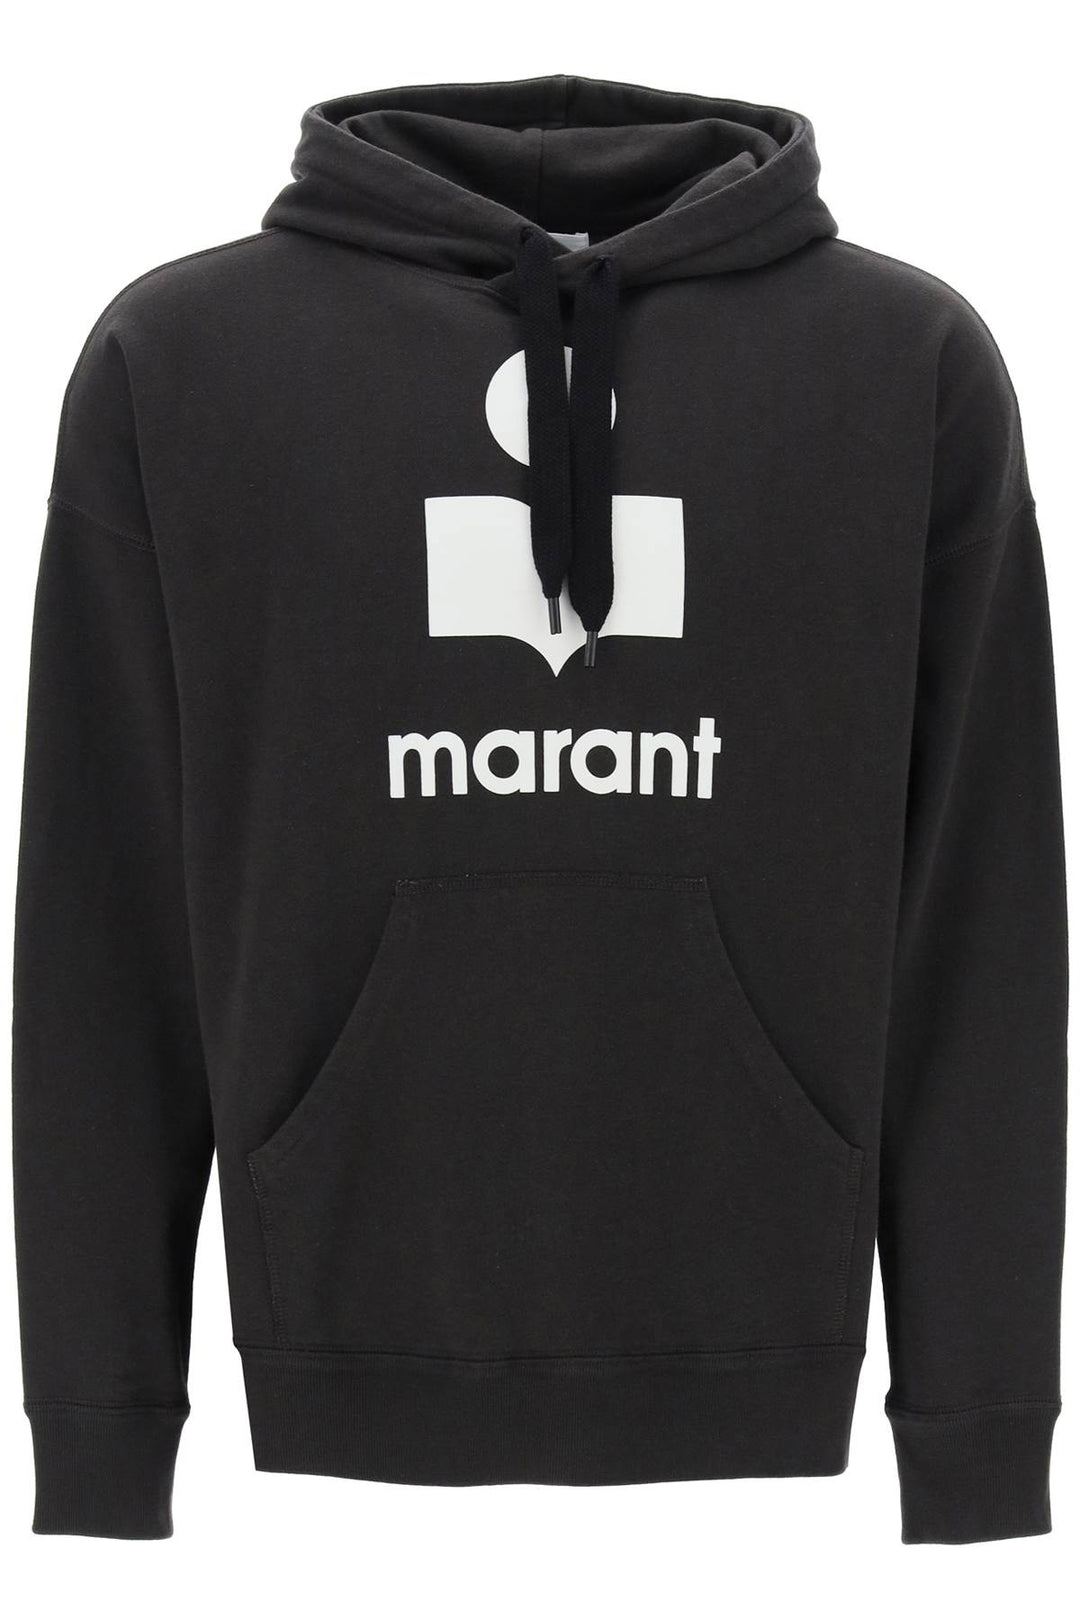 Marant miley flocked logo hoodie-0